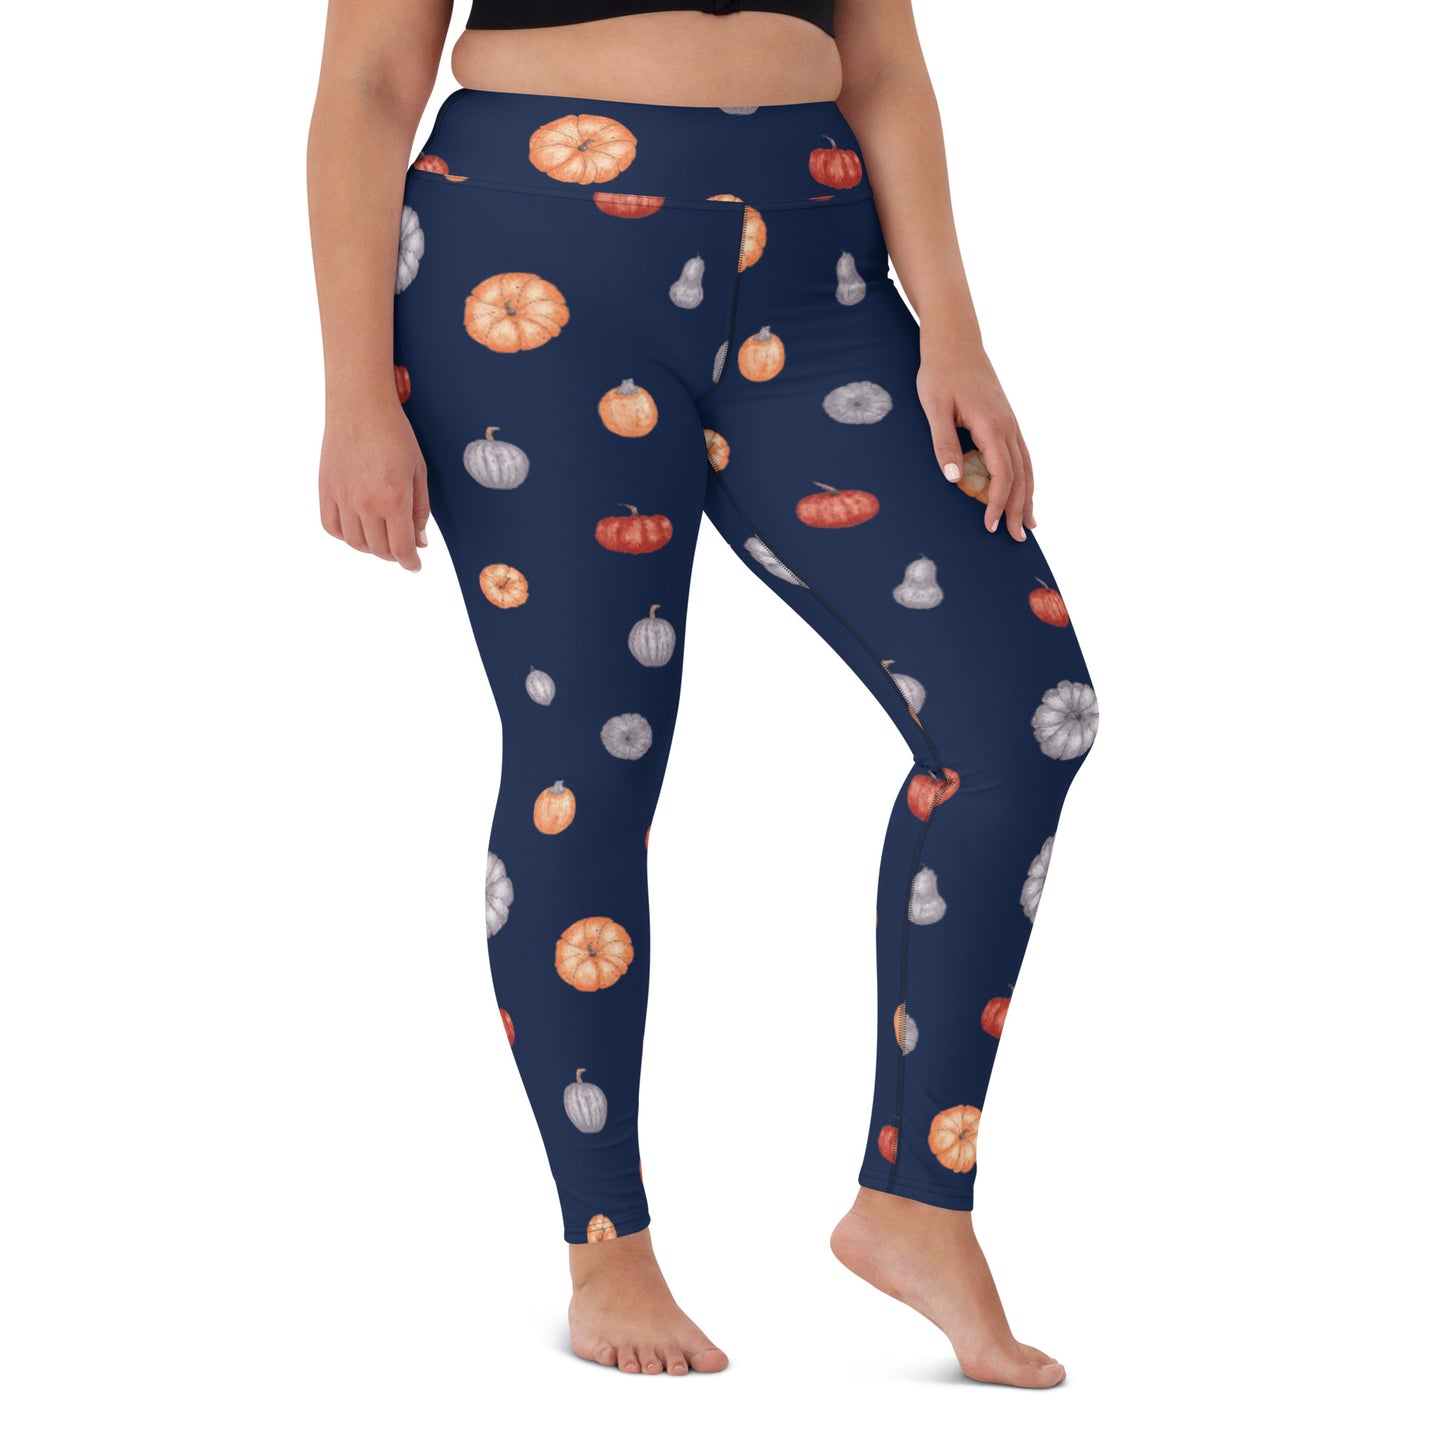 Multi-Color Pumpkins Print Yoga Leggings - Navy